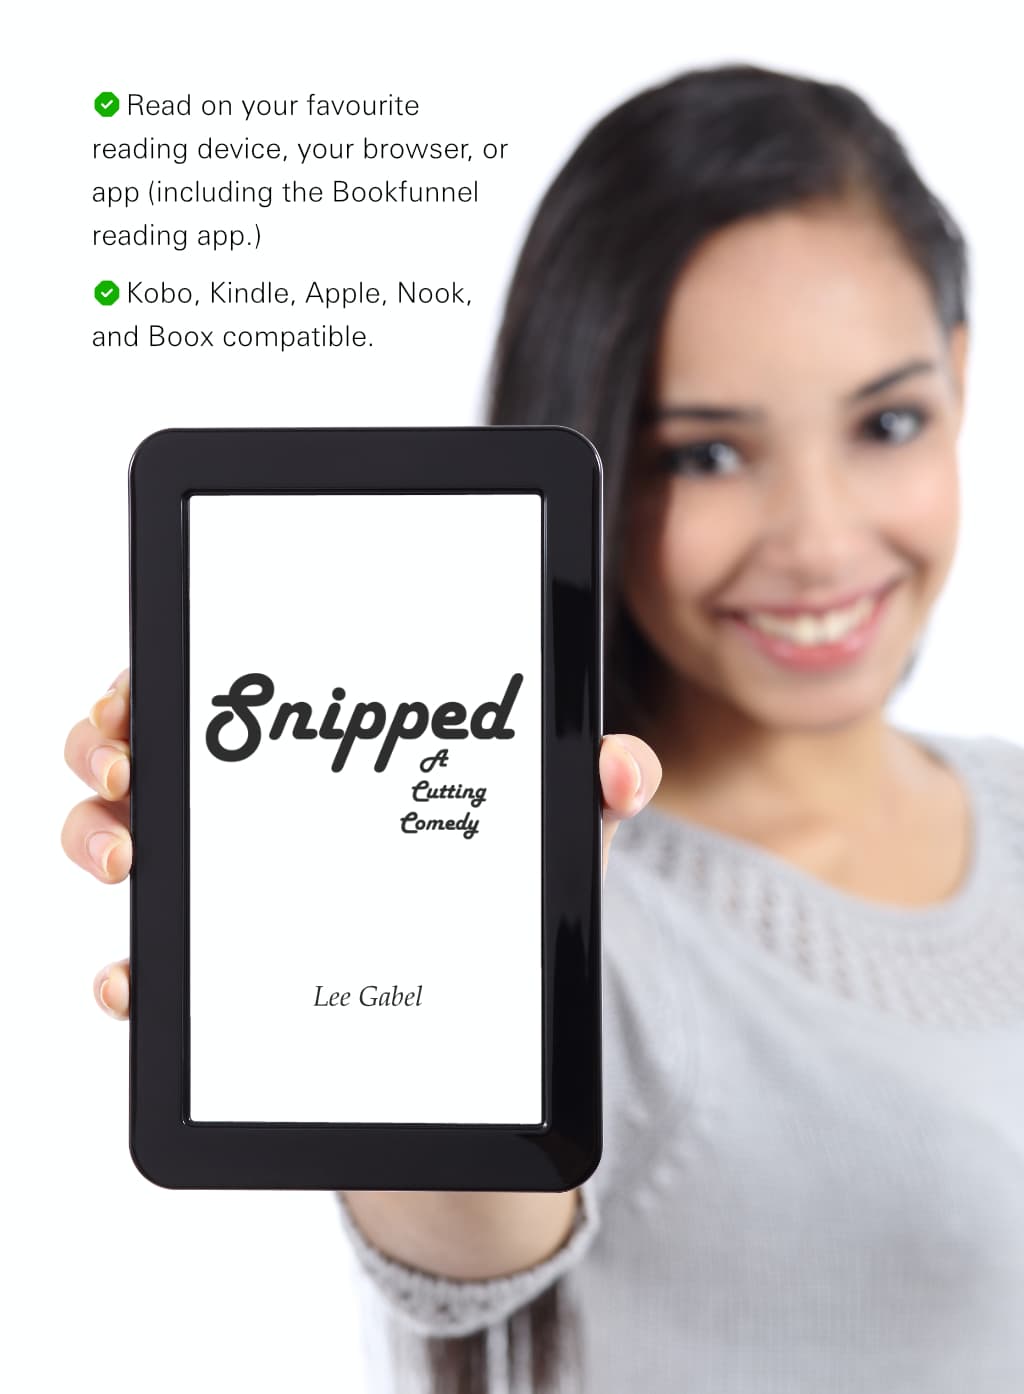 E-reader compatibility guarantee for Snipped e-book.